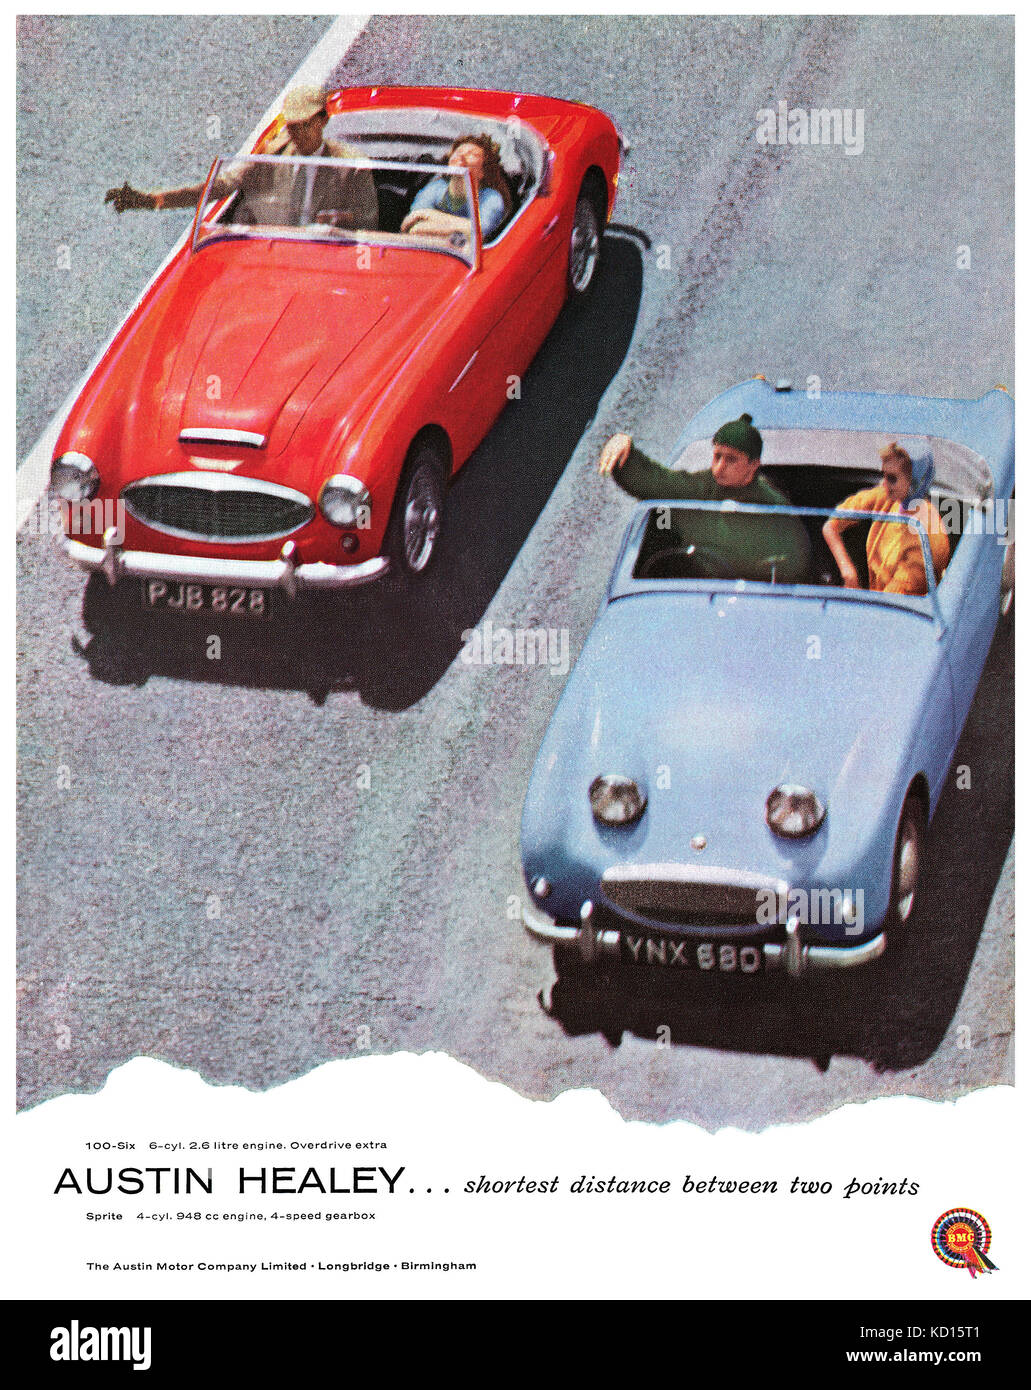 1958 anuncio británico para el Austin Healey 100-6 y Austin Healey Sprite autos deportivos. Foto de stock